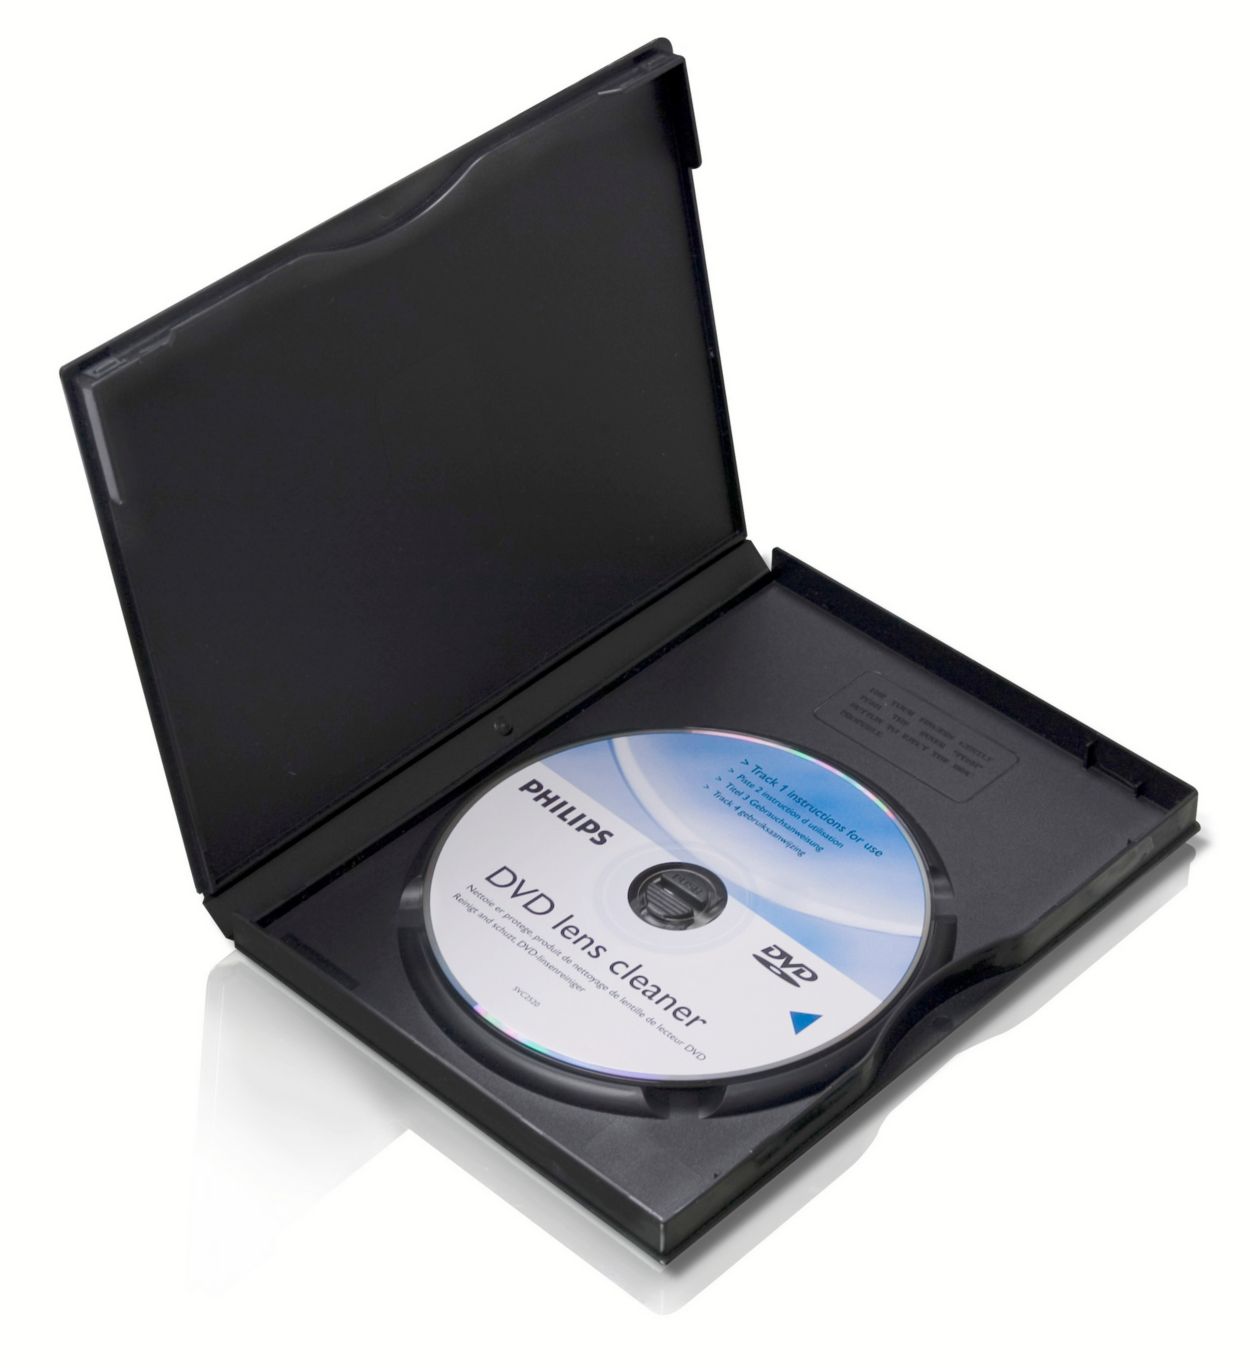 YHDD Disque de nettoyage pour CD, sûr et efficace pour lecteur CD/VCD/DVD :  : Électronique